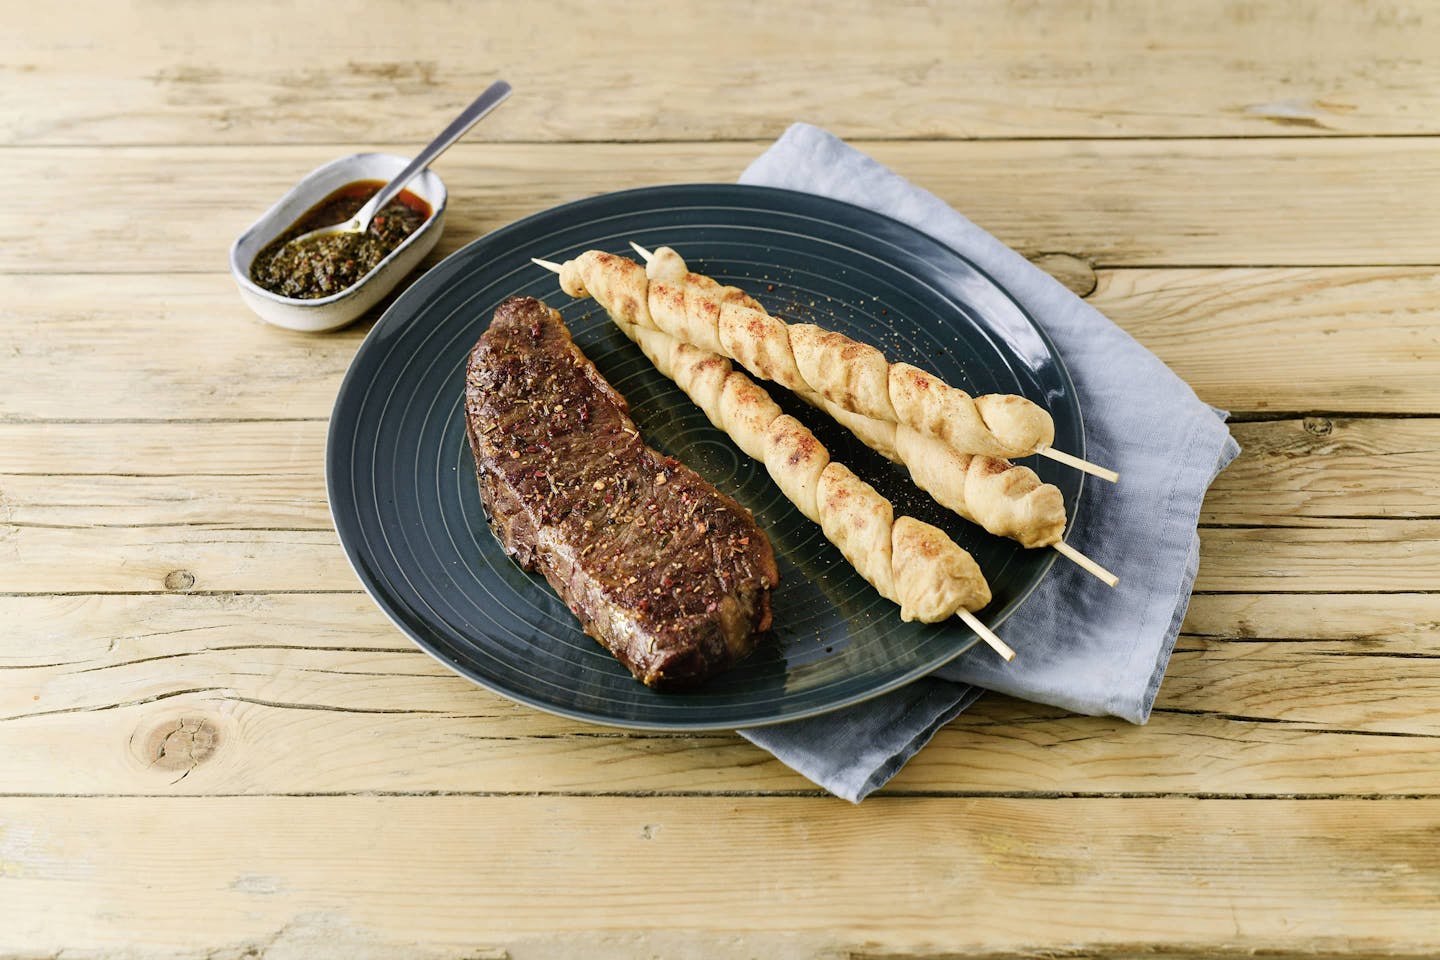 Grill-Smoked Steak Mit Brotspiessen und chimichurri-sauce